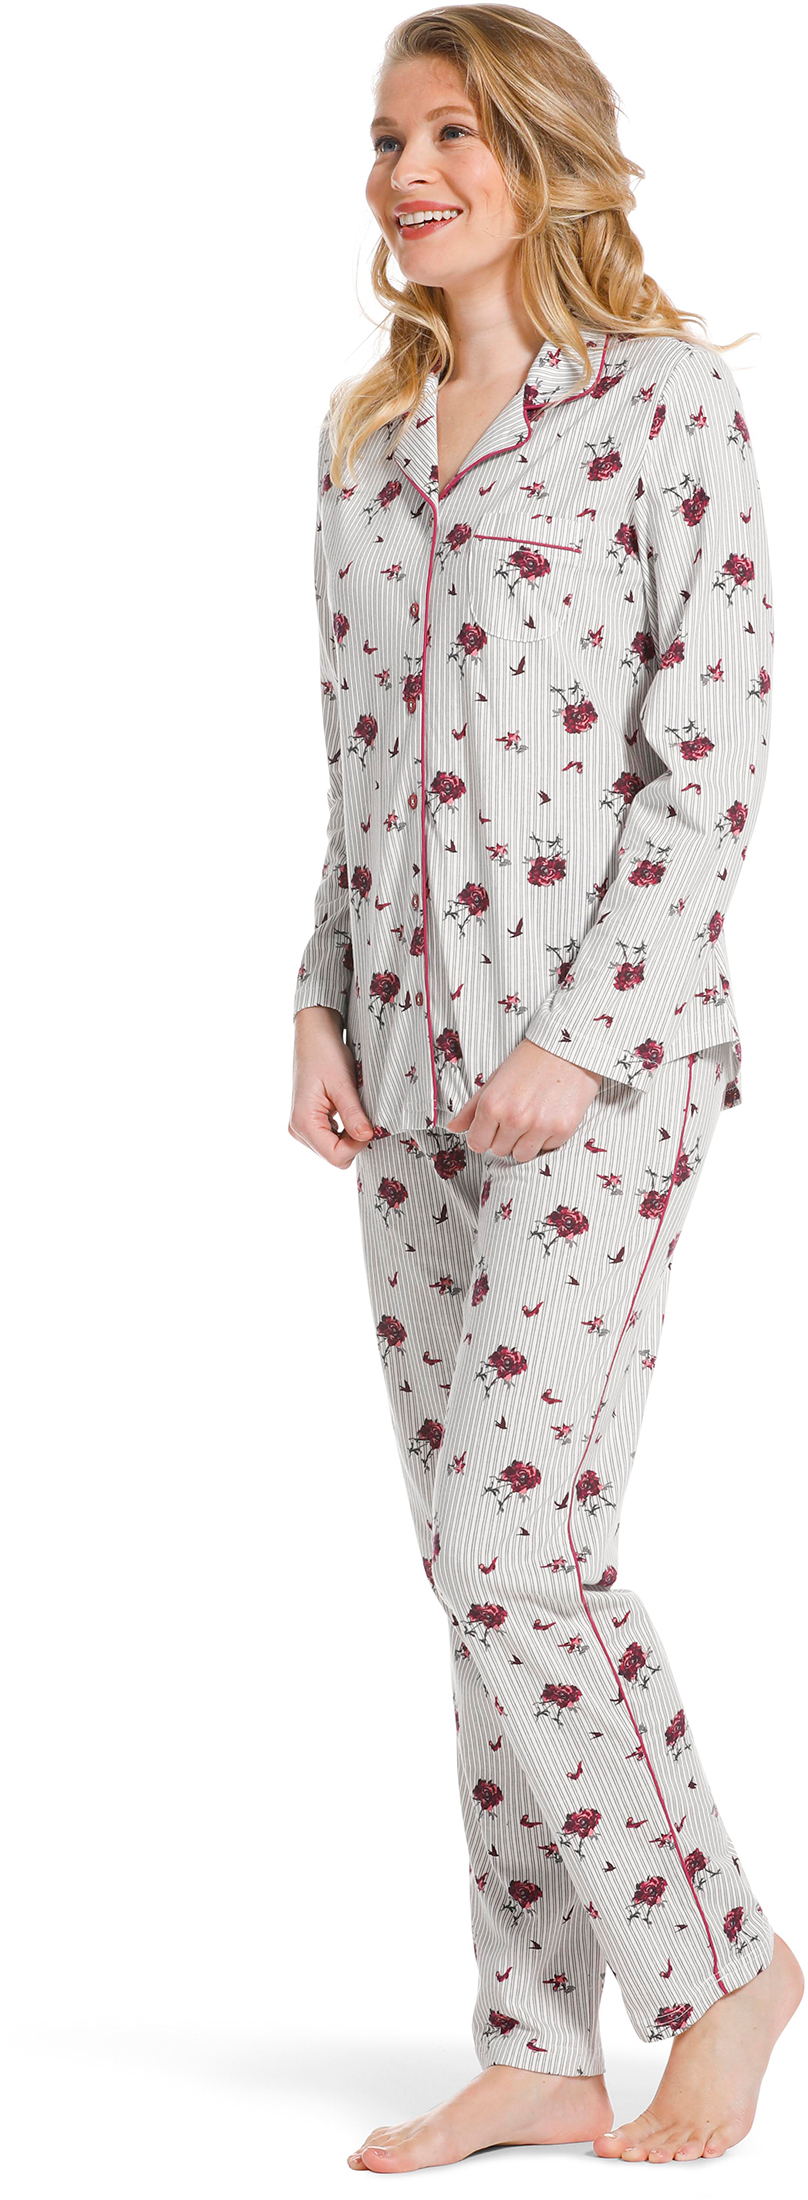 Pastunette doorknoop dames pyjama 20222-156-6-38